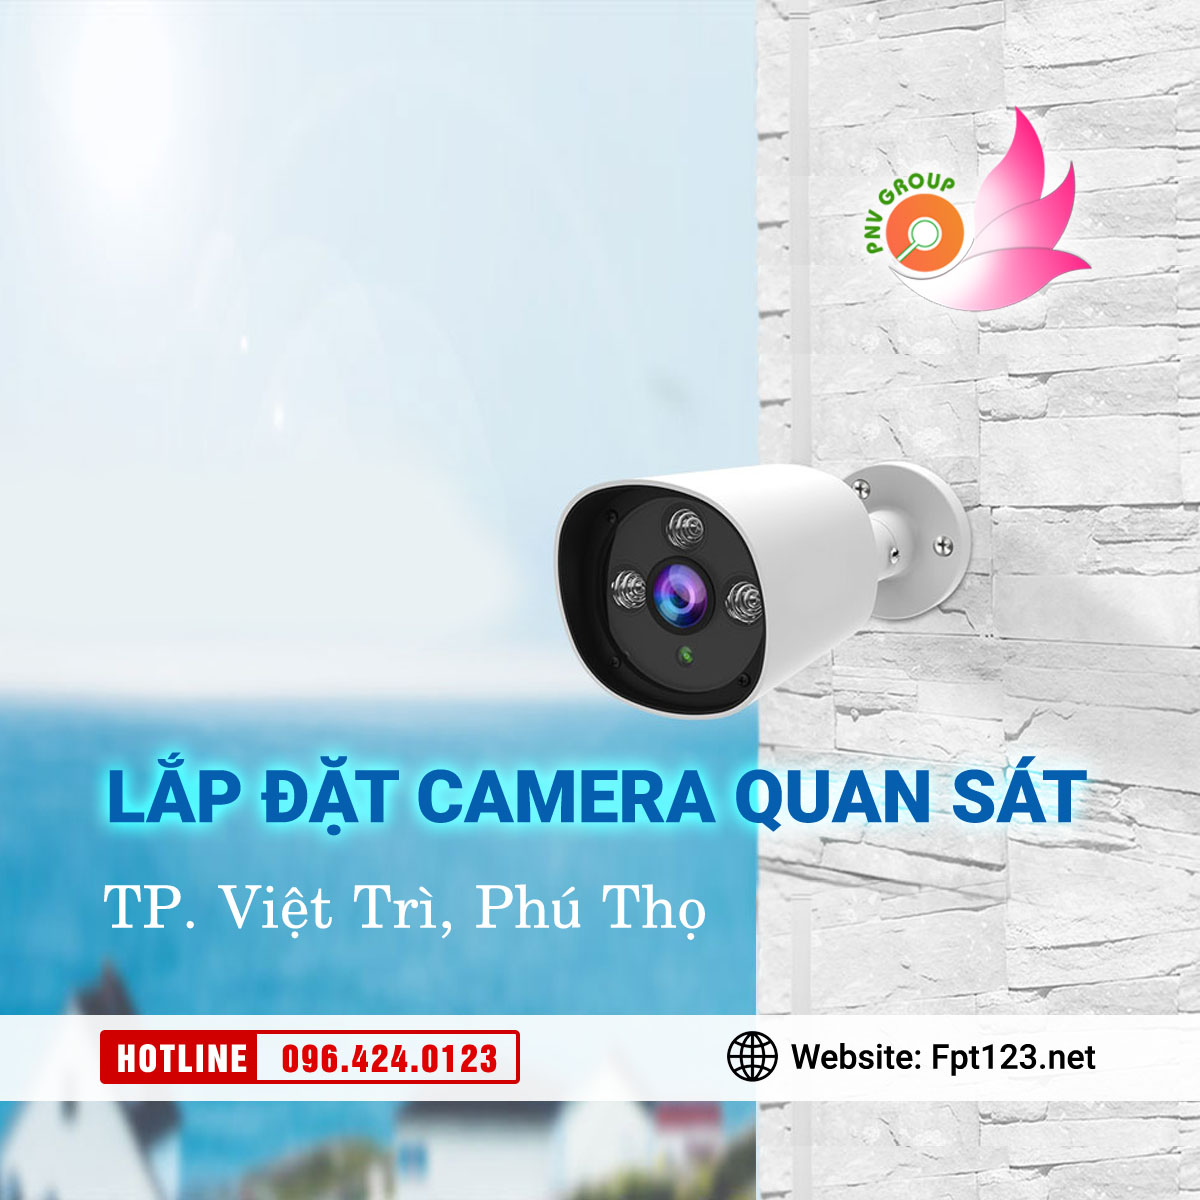 Lắp đặt camera quan sát tại TP Việt Trì, Phú Thọ